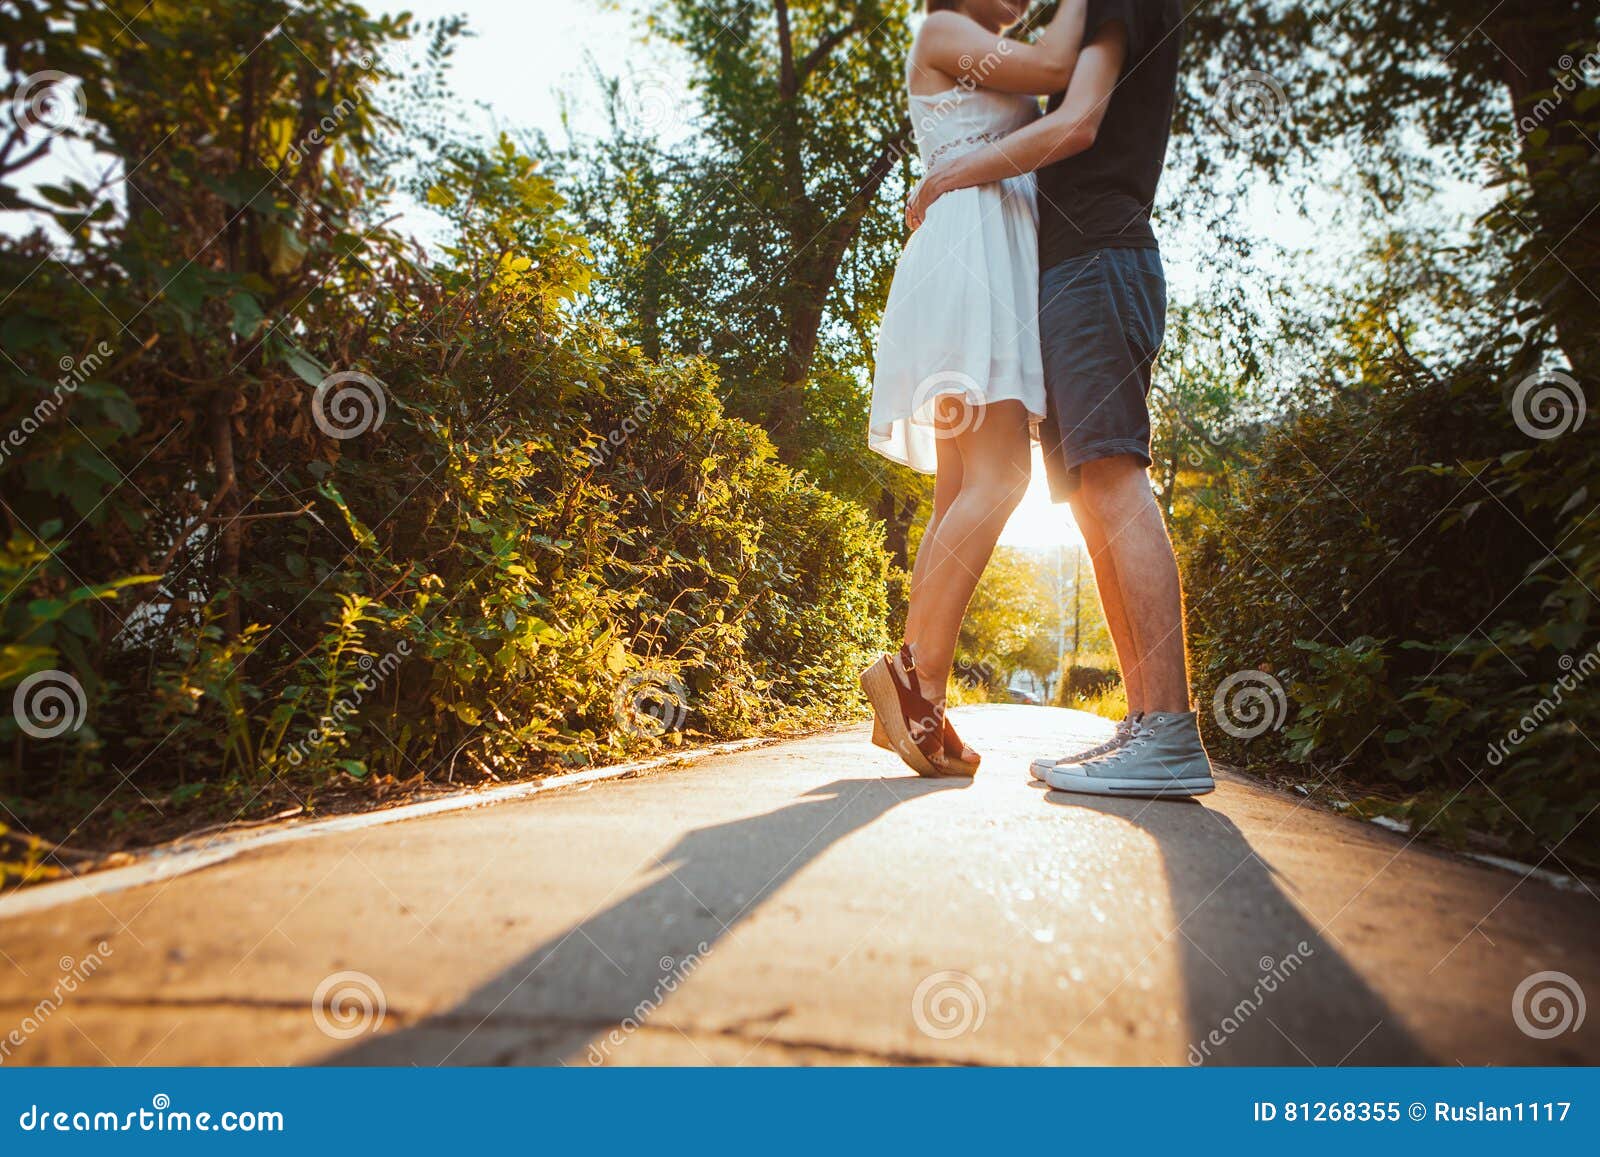 Девушка обнимает ногу. Девушка обнимает мужчину в парке летом. Девушка обнимает ноги девушки картинки. Парень с девушкой обнимаются спины идут по городу босиком. Girl hugging guy with Legs.